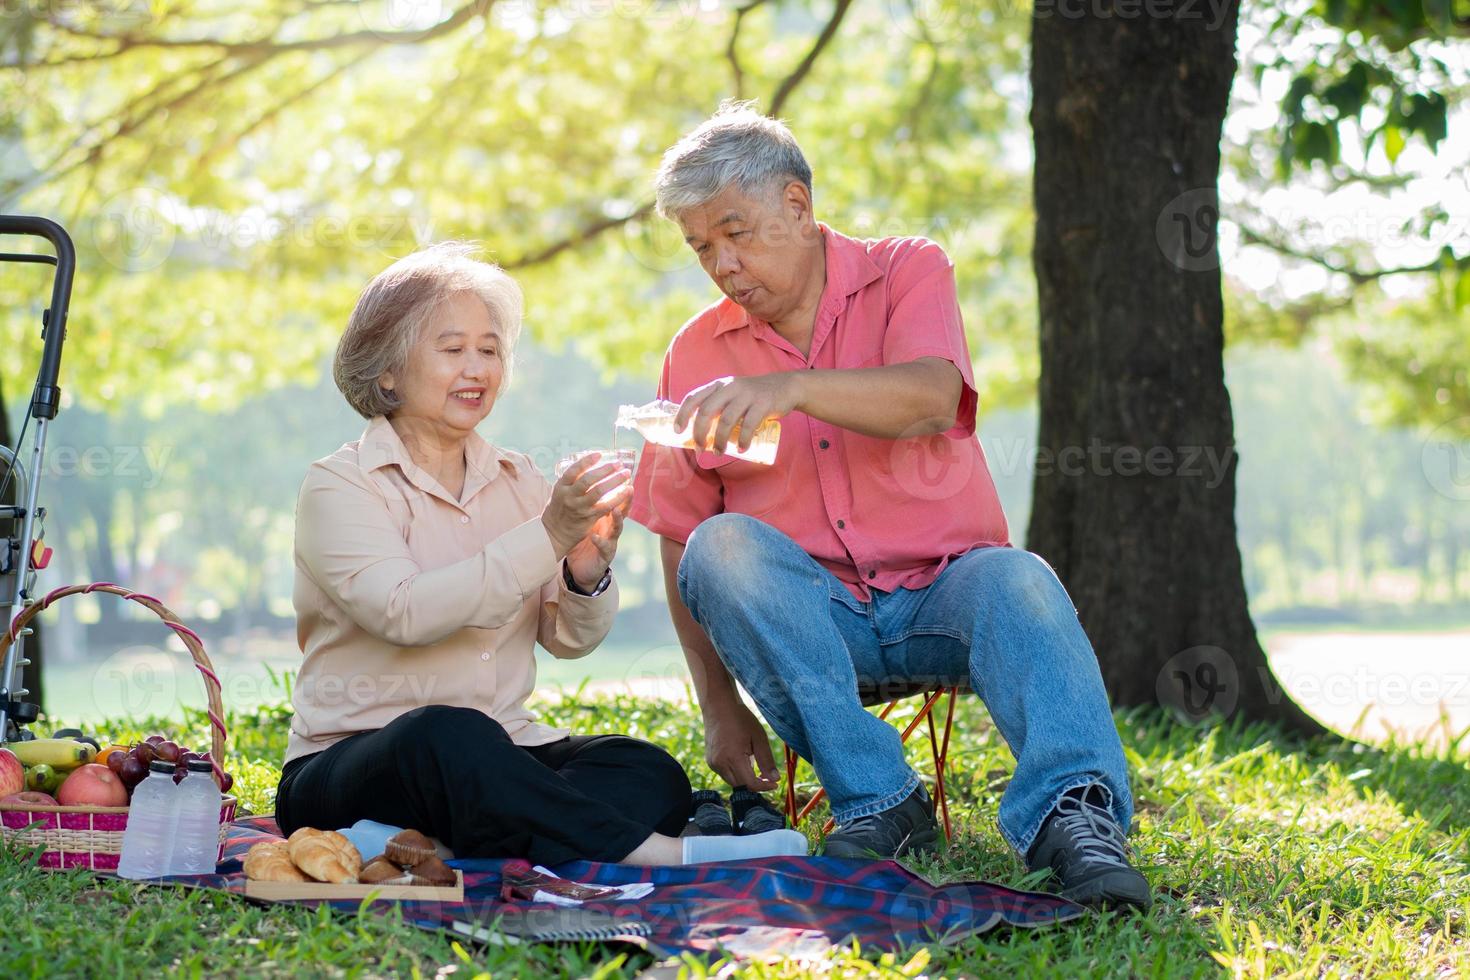 Felizes velhos cônjuges de casal de idosos relaxando e sentados em um cobertor no parque e compartilhando algumas memórias preciosas. casal sênior se divertindo juntos em um piquenique. conceito de relacionamentos maduros foto